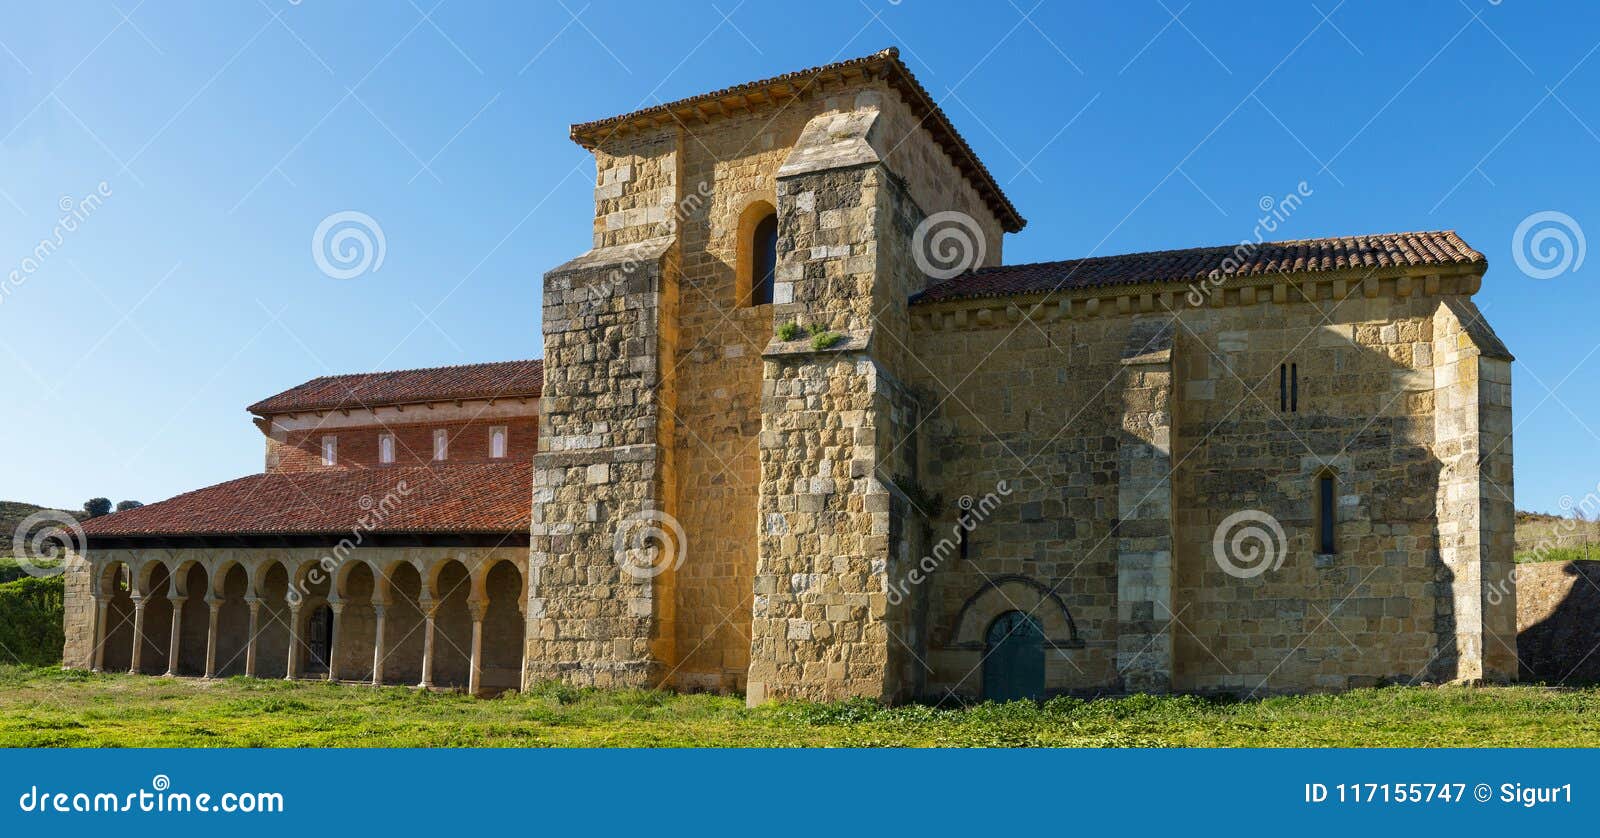 monastery of san miguel de escalada in leon spain